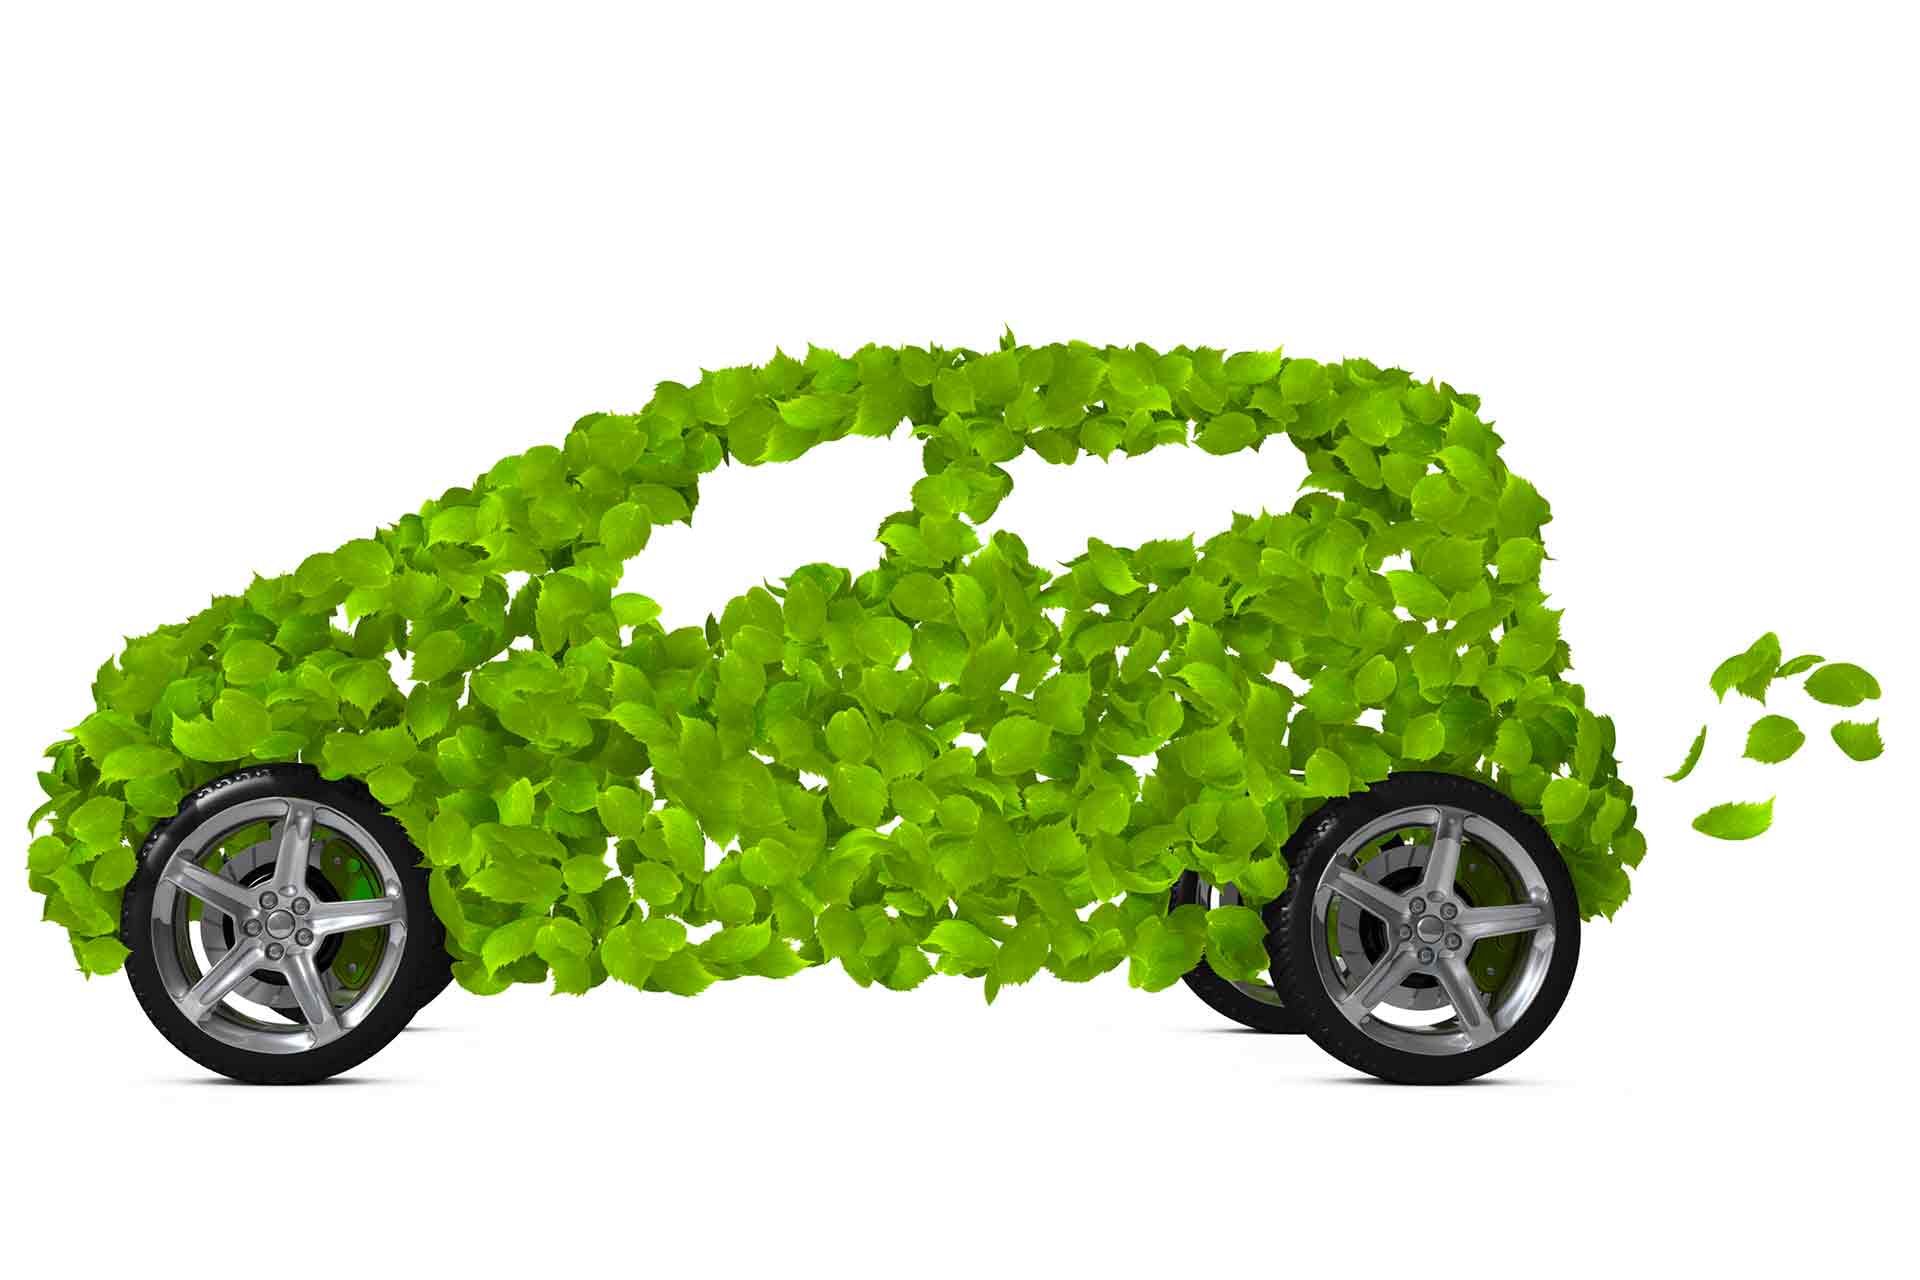 Electrique, bioGNV, hydrogène… quelles motorisations alternatives efficaces pour le climat ?